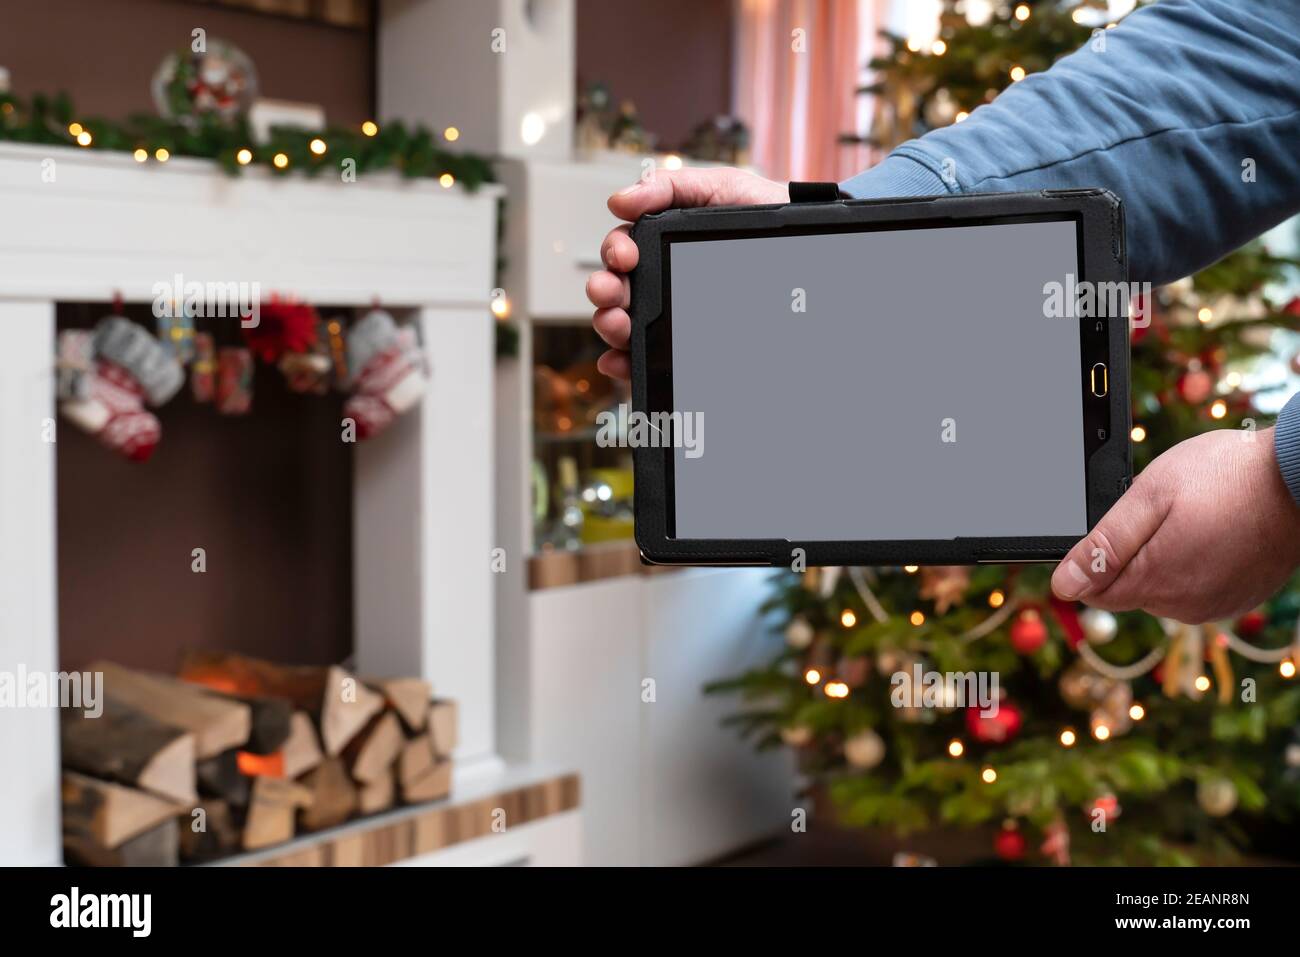 En el apartamento en Navidad un hombre está sosteniendo una bandeja en primer plano es el Tablet PC con espacio de copia. En el fondo está Bokeh del árbol de Navidad. Foto de stock